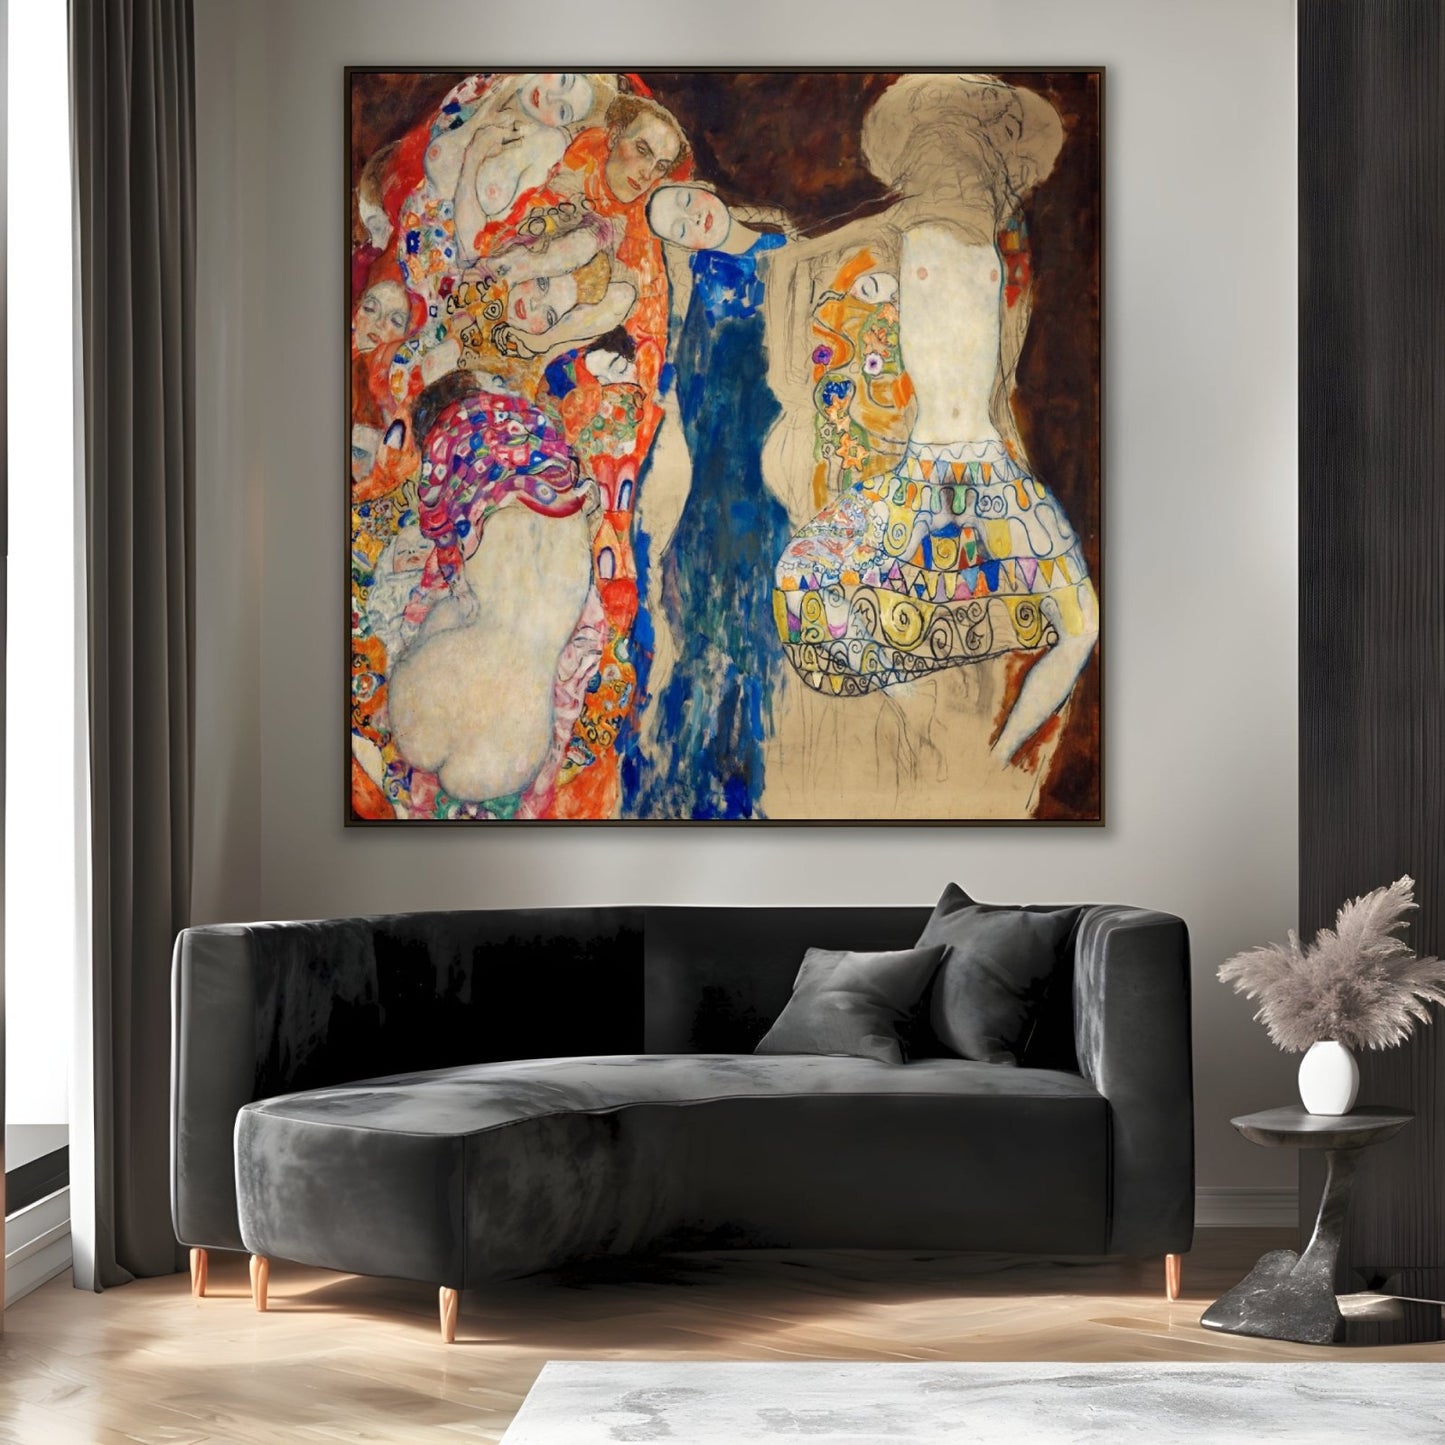 La Sposa, Klimt